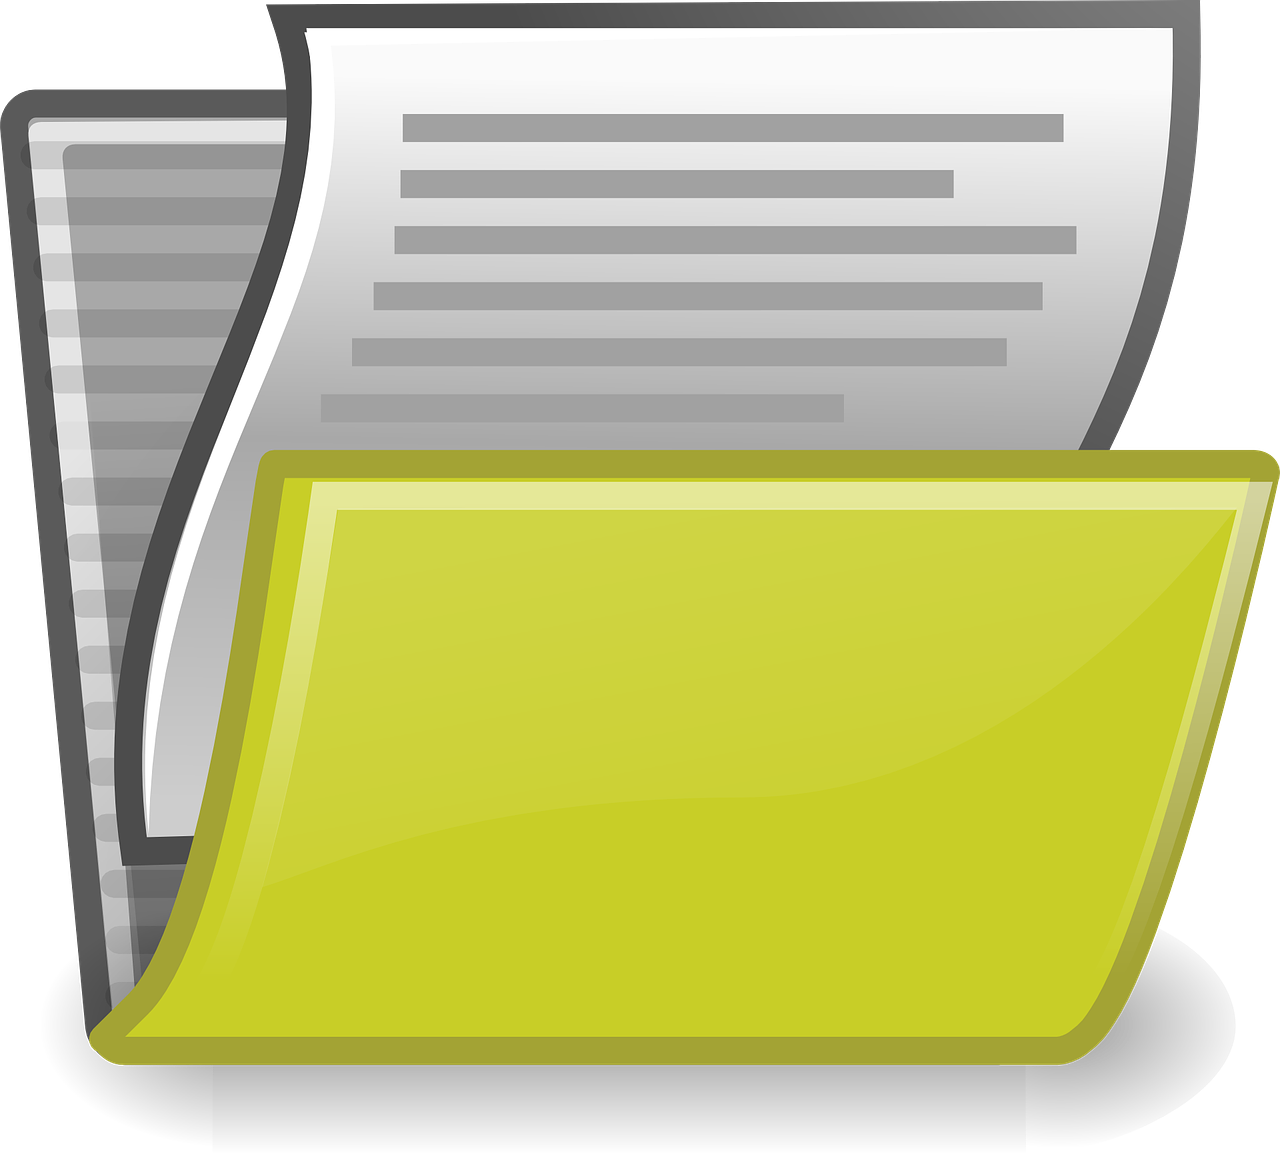 GoBD regelt wie digitale Unterlagen steuerkonform gespeichert werden (Bild: Clker-Free-Vector-Images/Pixabay)